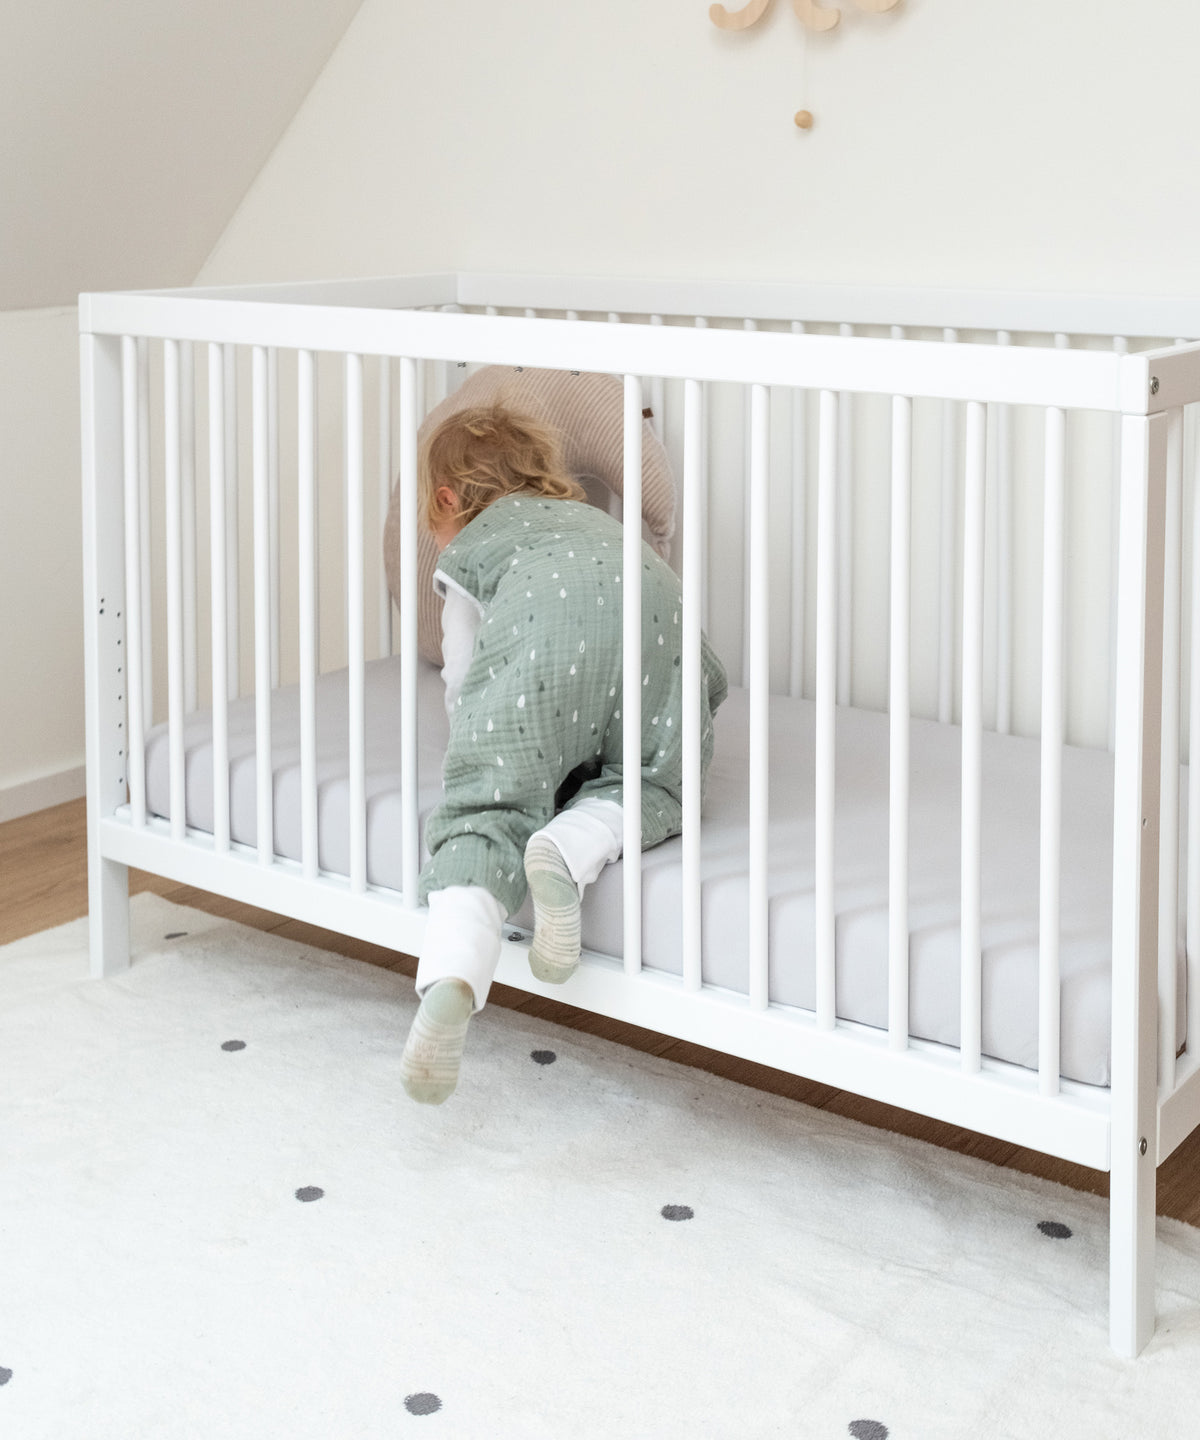 Kind krabbelt durch Öffnung in Babybett weiß.